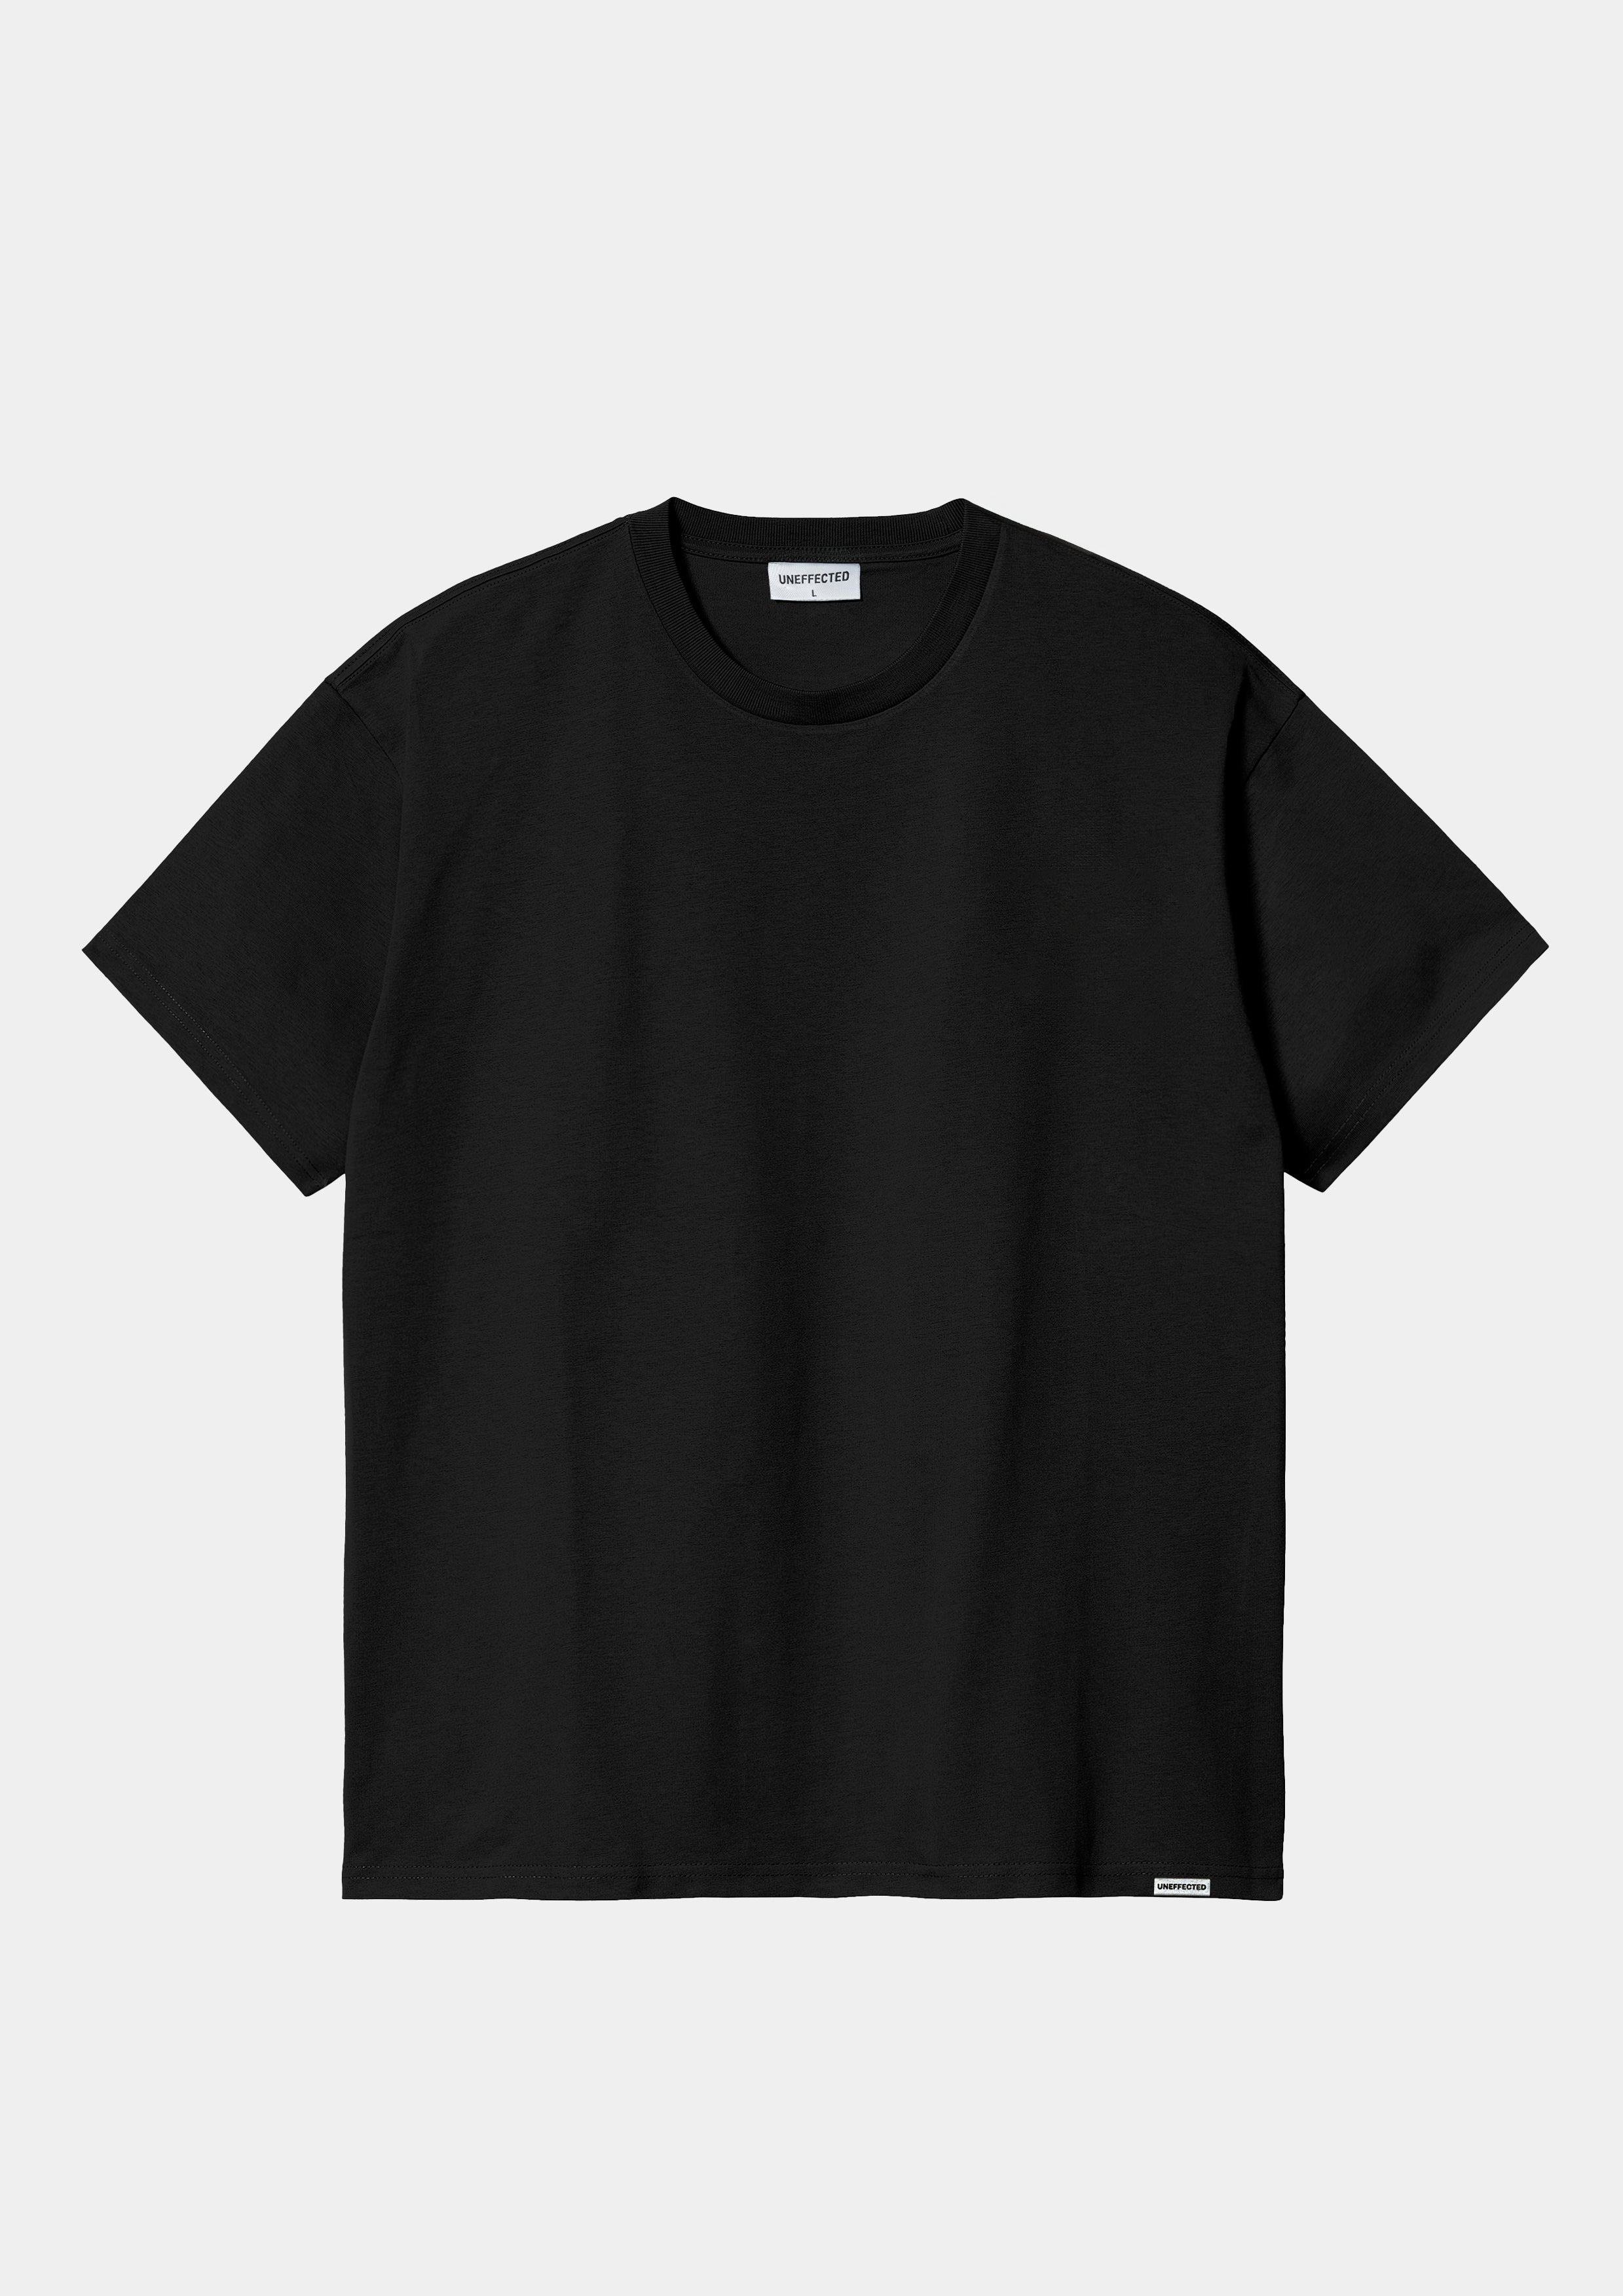 Blank 240GSM Oversized Tee - Black - UNEFFECTED STUDIOS® - T - shirt - UNEFFECTED STUDIOS®